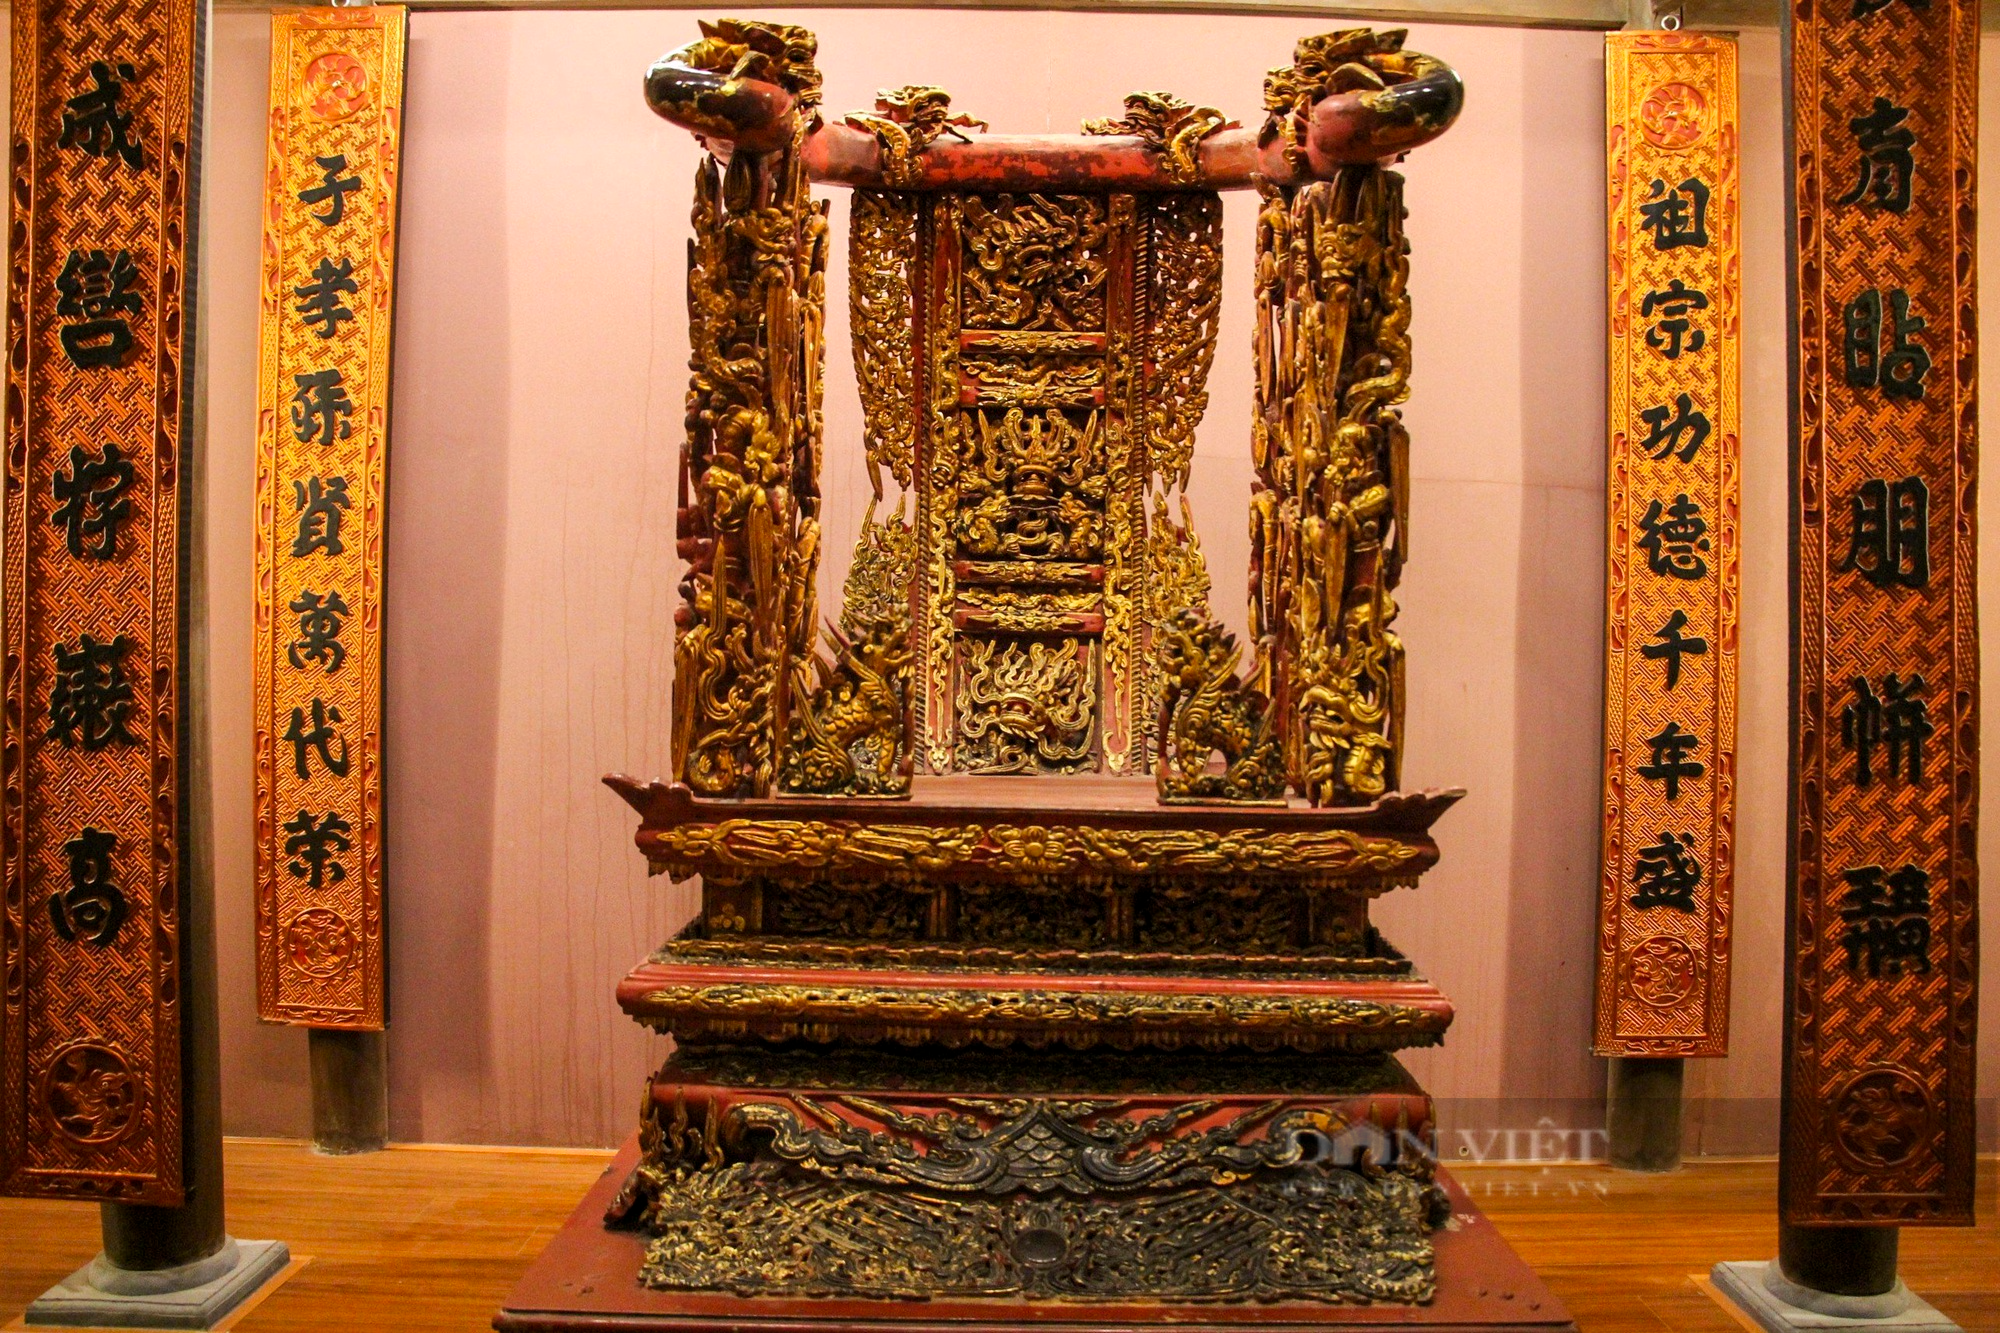 Ngai thờ sơn son thếp vàng 300 tuổi ở Thái Bình được công nhận là bảo vật quốc gia - Ảnh 10.